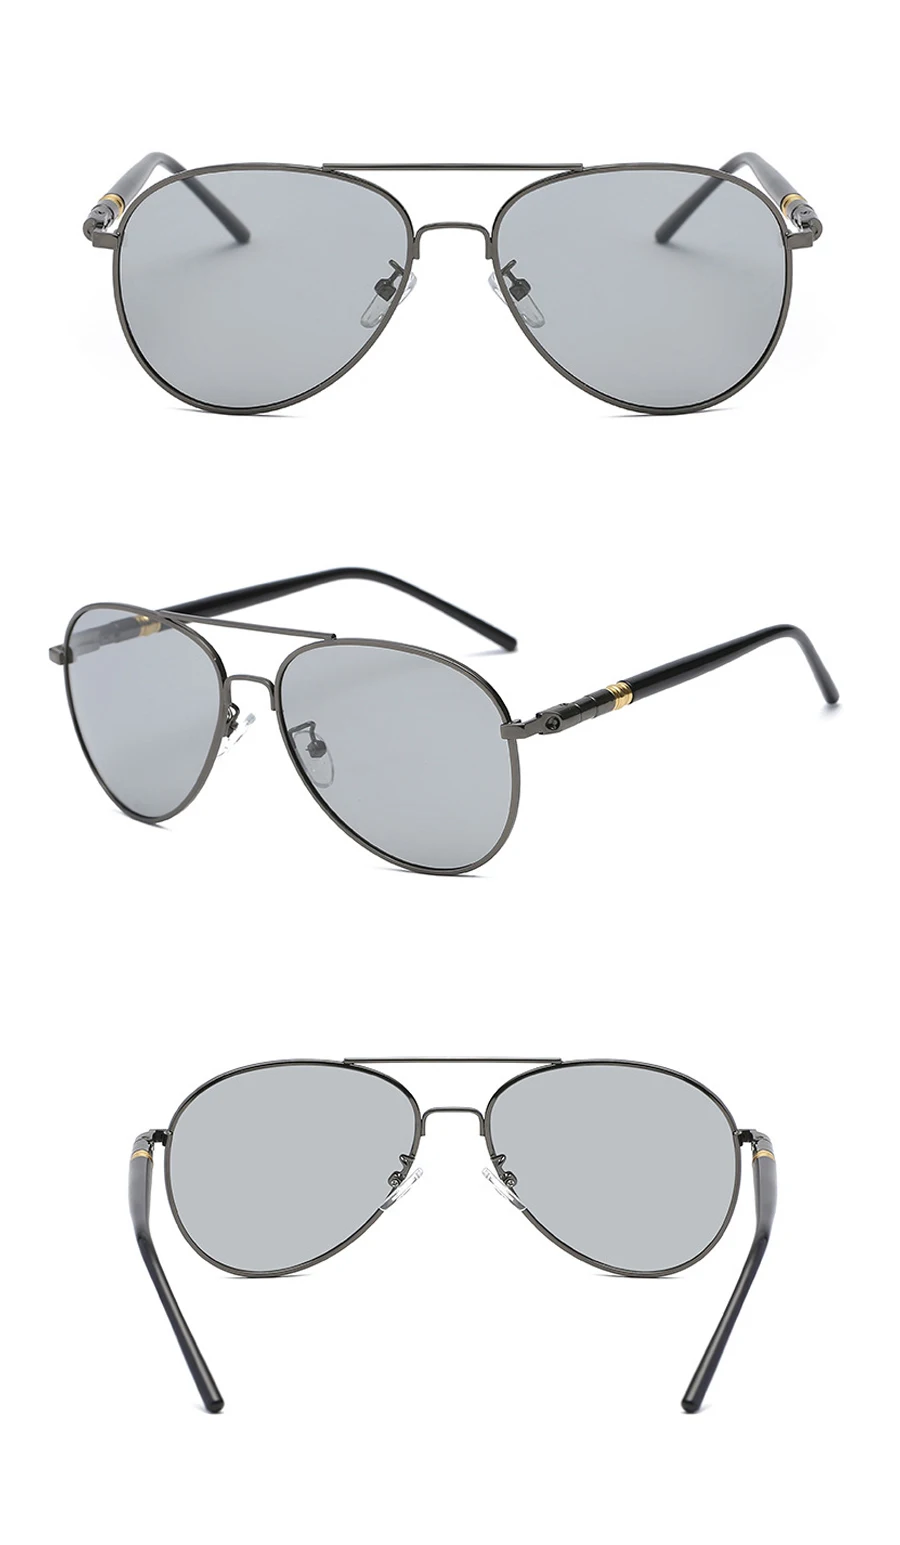 Мужские поляризованные солнцезащитные очки с металлической оправой черные/коричневые UV400 очки мужские солнцезащитные очки водителя